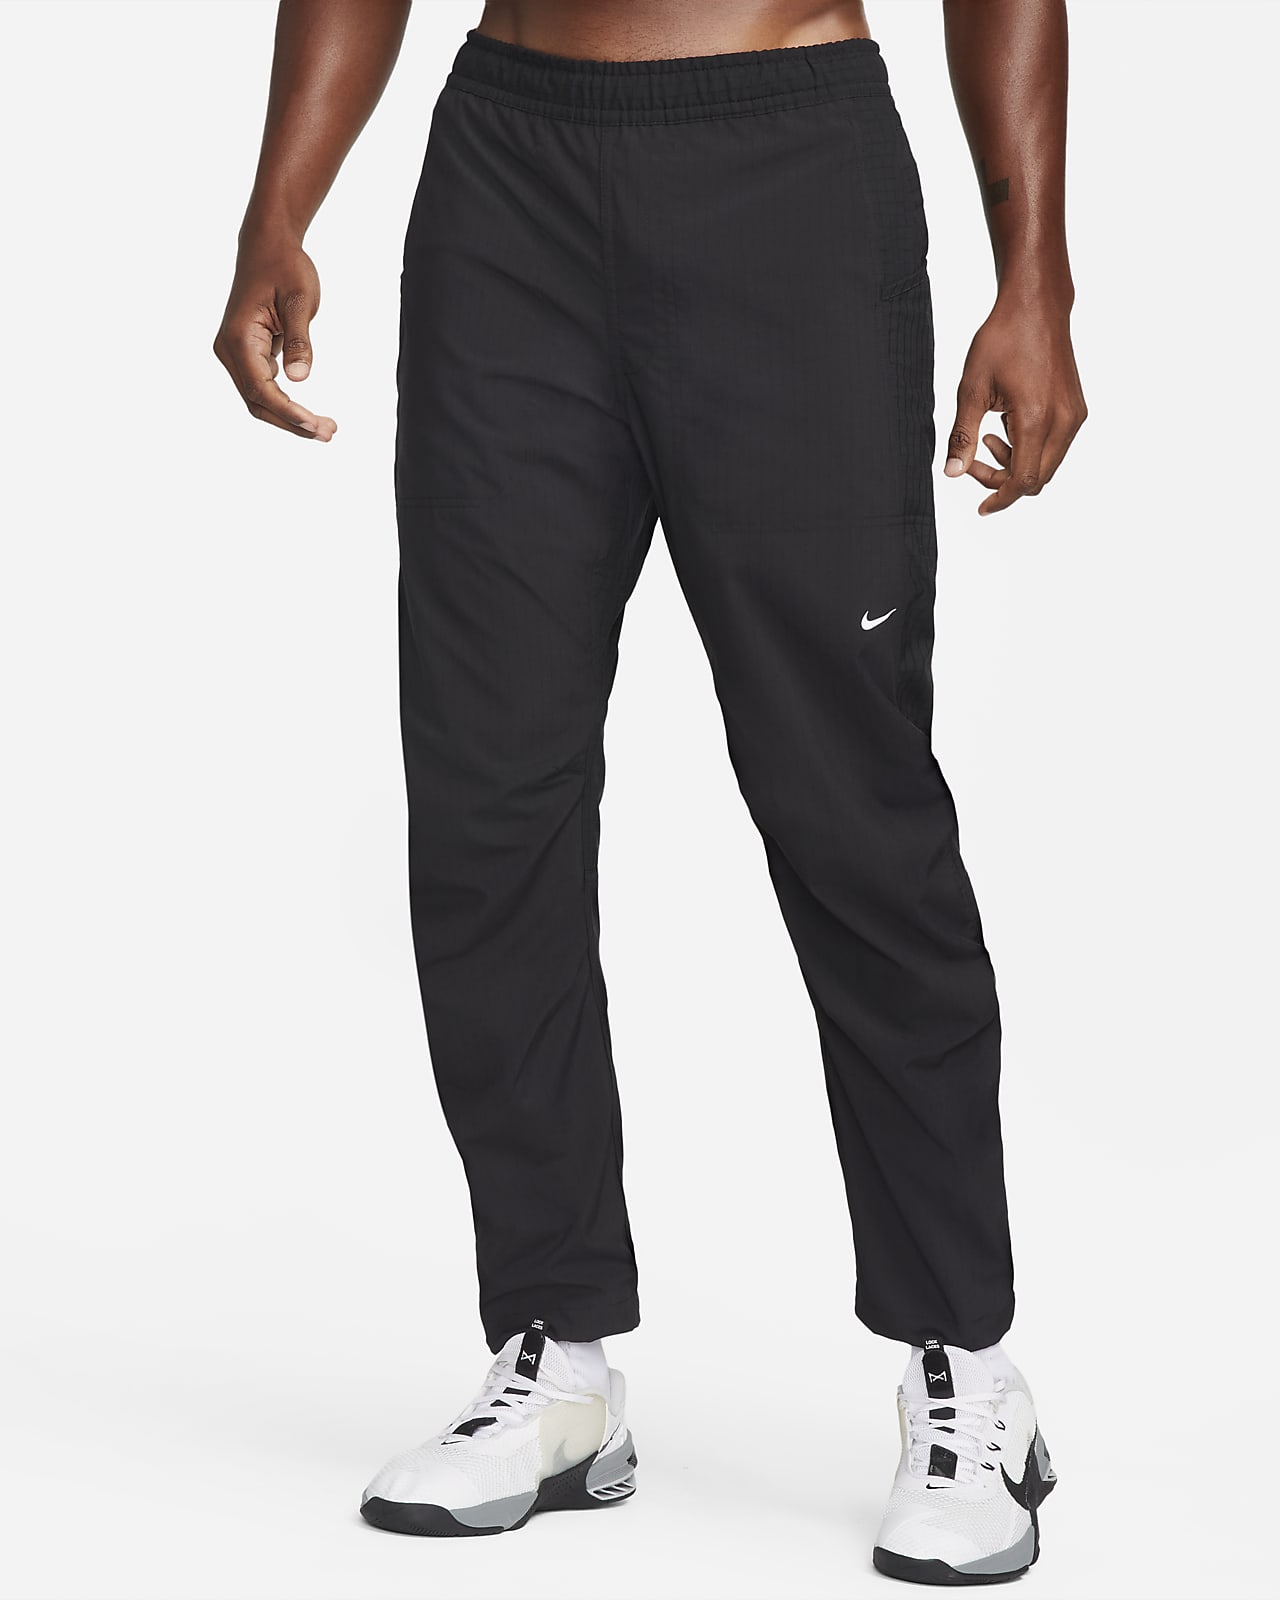 Mens DriFIT Trousers  Tights Nike UK